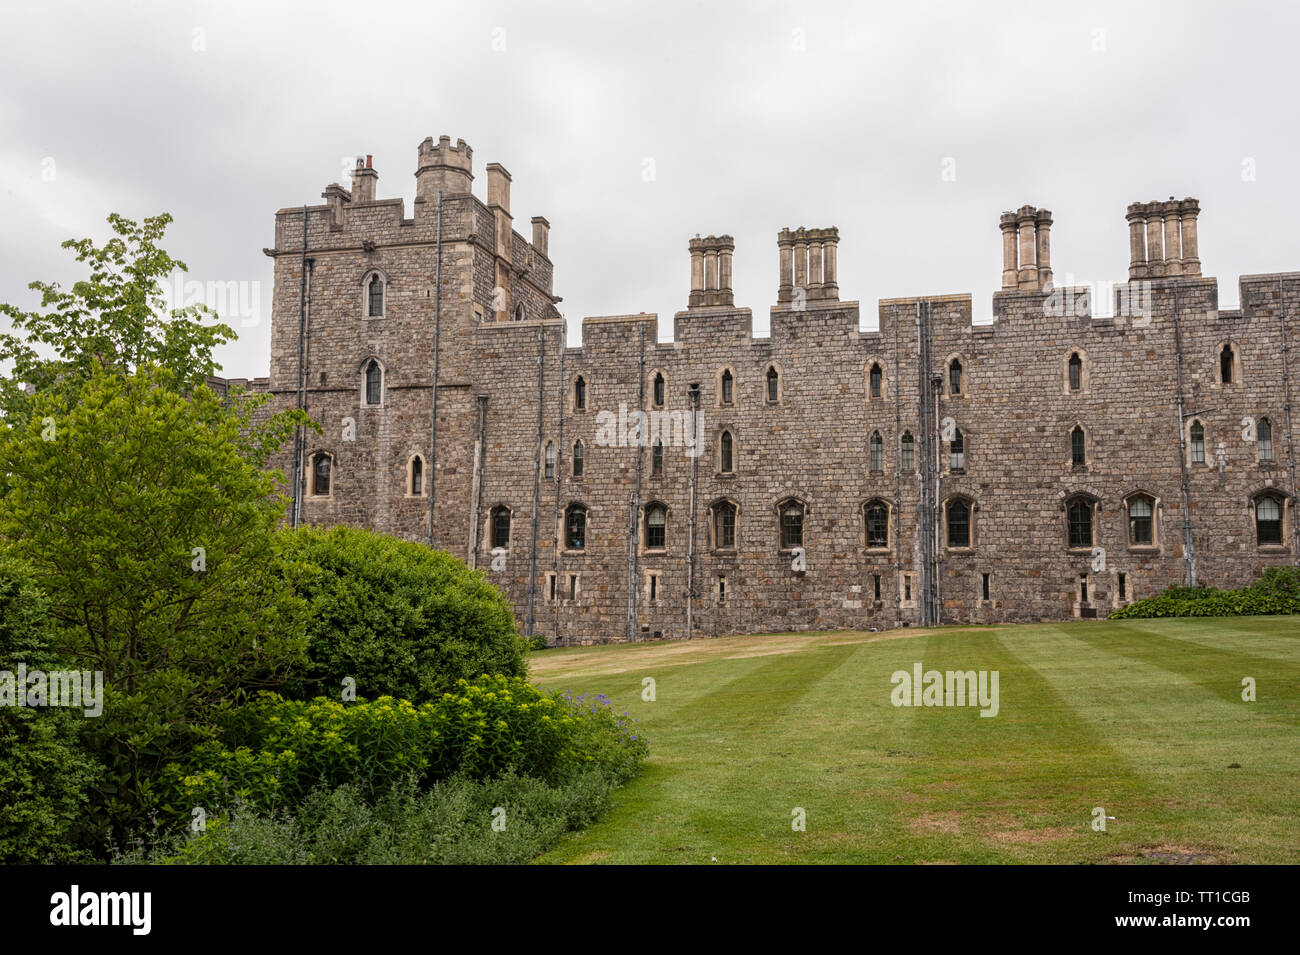 Le Château de Windsor, construite au 11e siècle, est la résidence de la famille royale britannique à Windsor dans le comté anglais du Berkshire, Royaume-Uni Banque D'Images